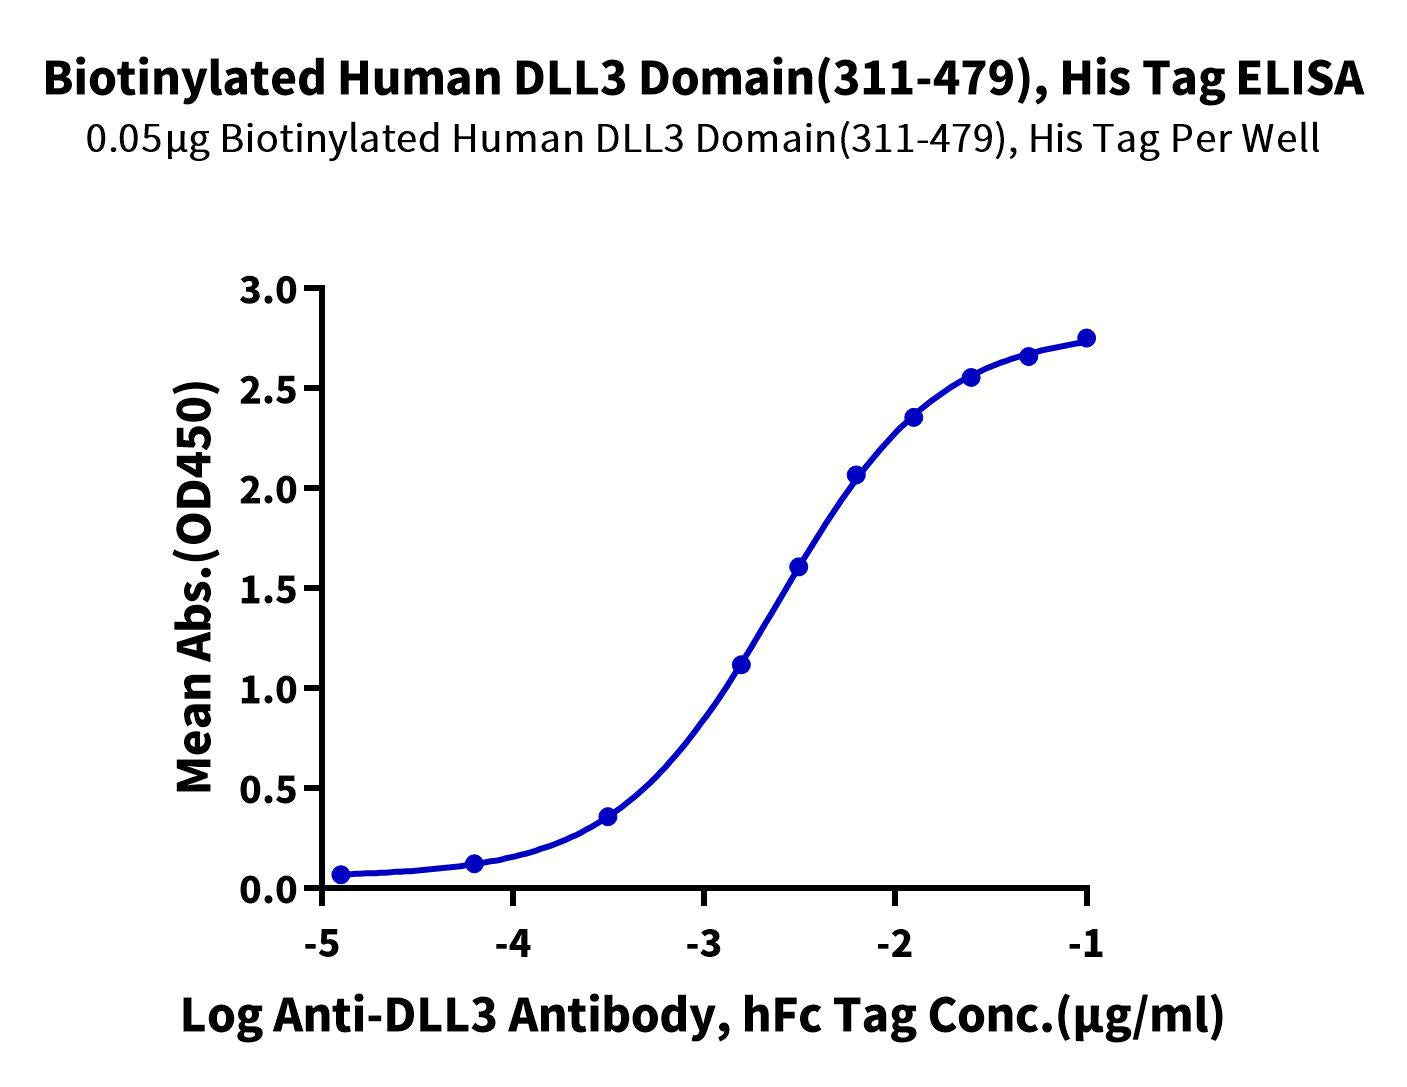 Biotinylated Human DLL3 Domain (311-479) Protein (DLL-HM4D1B)